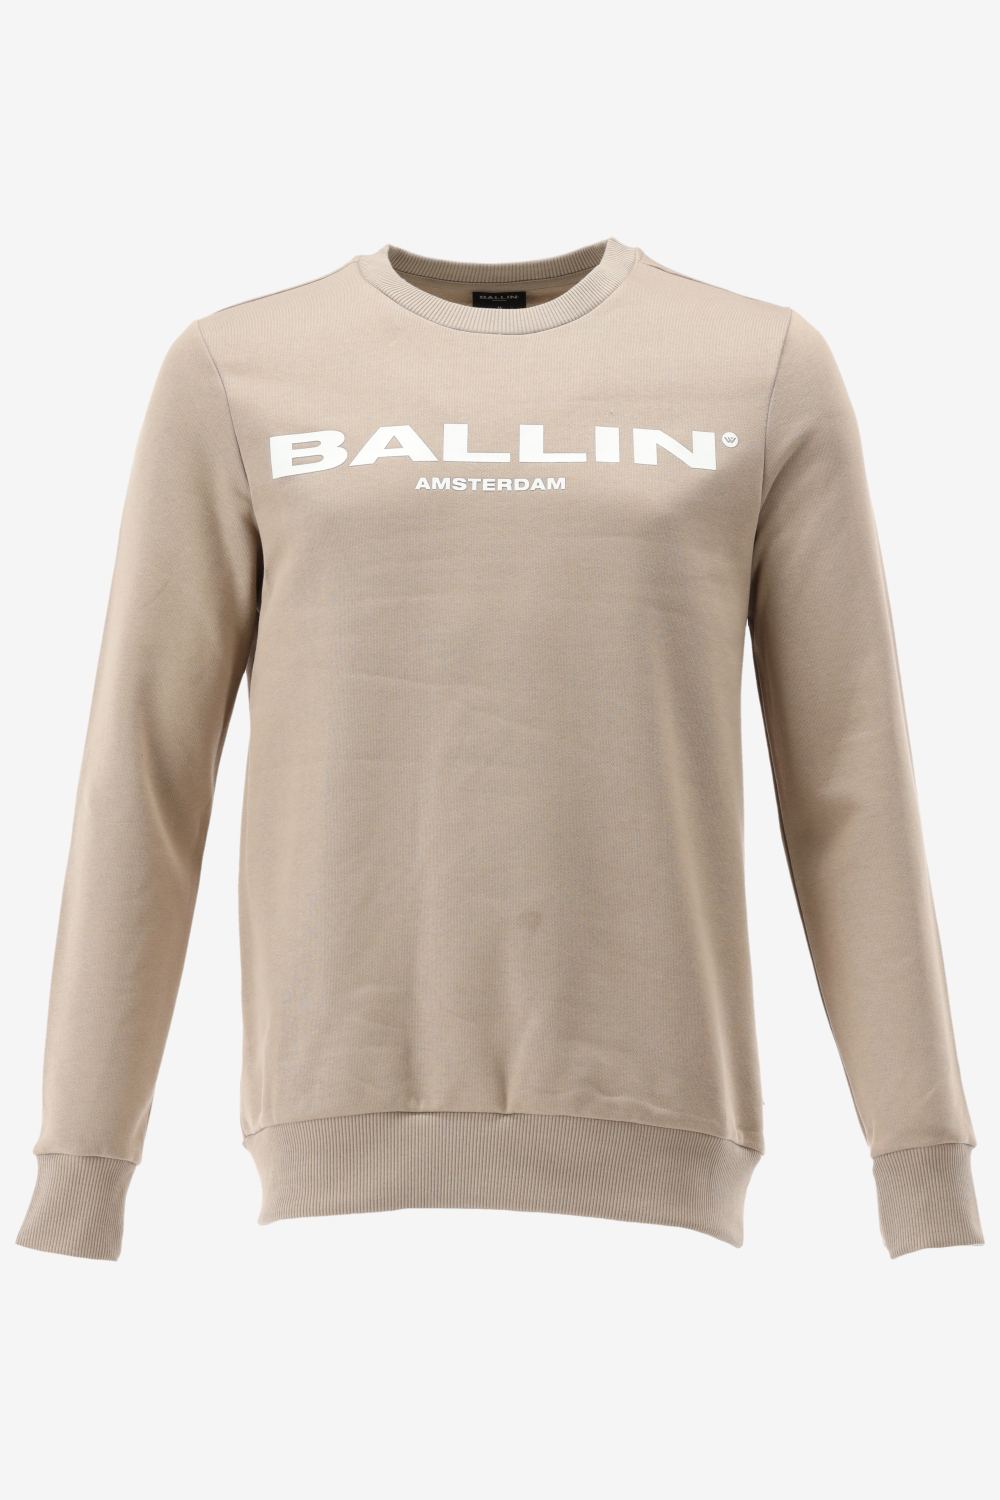 Ballin Amsterdam -  Heren Slim Fit  Original Sweater  - Bruin - Maat L